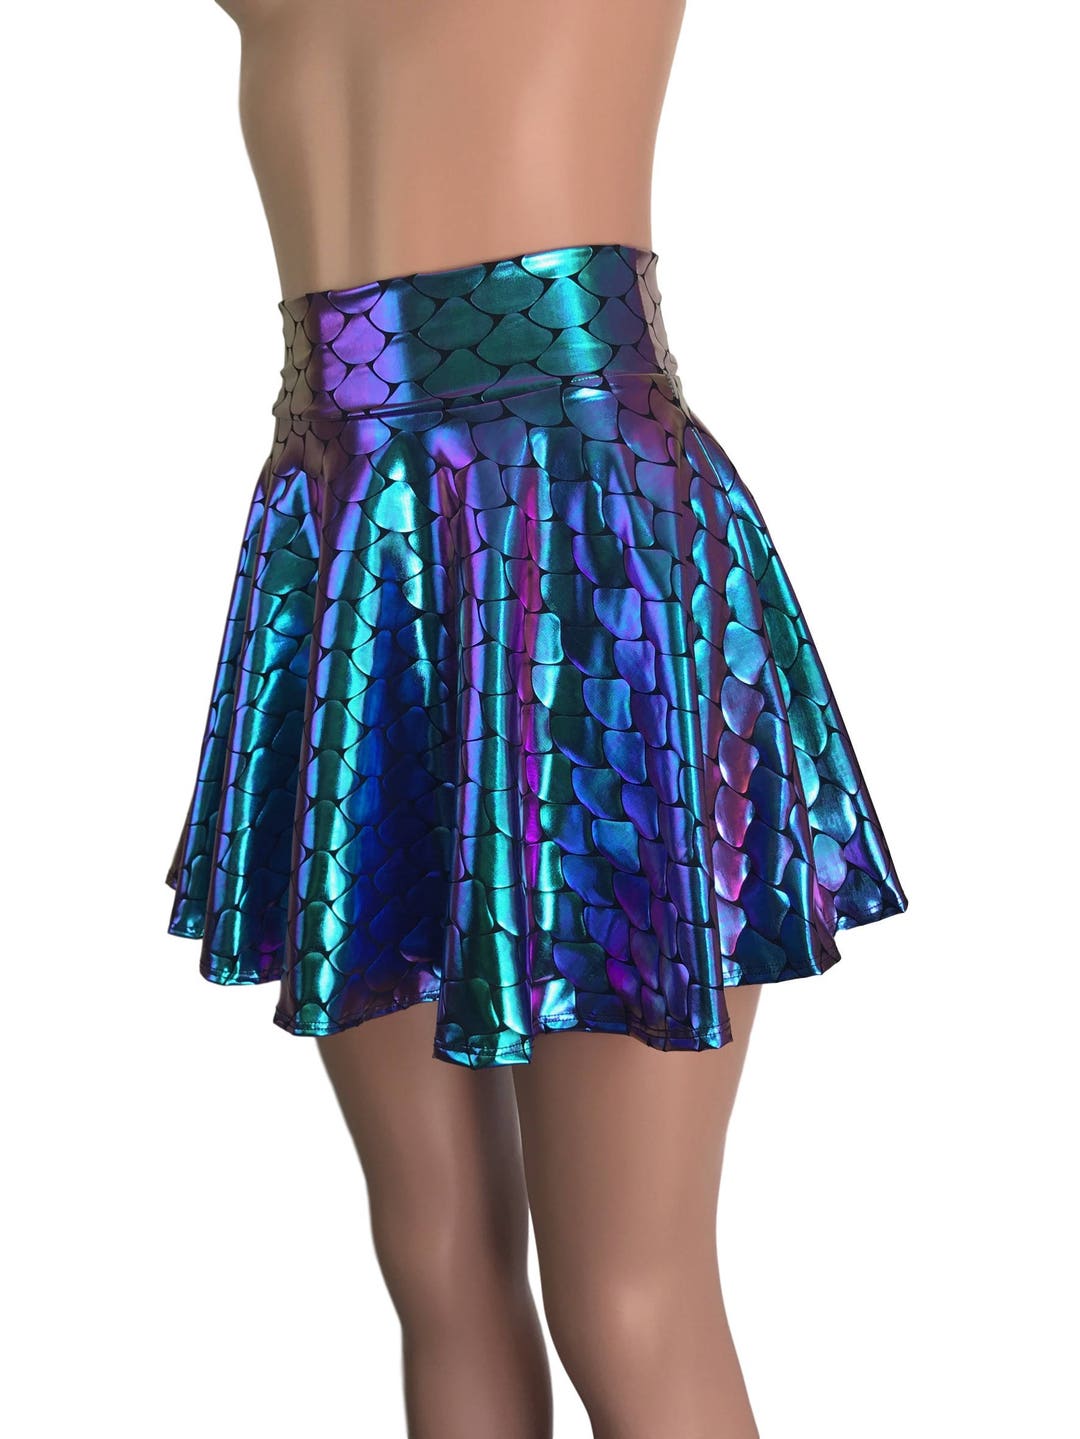 Mermaid Costume Skirt Holographic Scales Skater Skirt Rave - Etsy